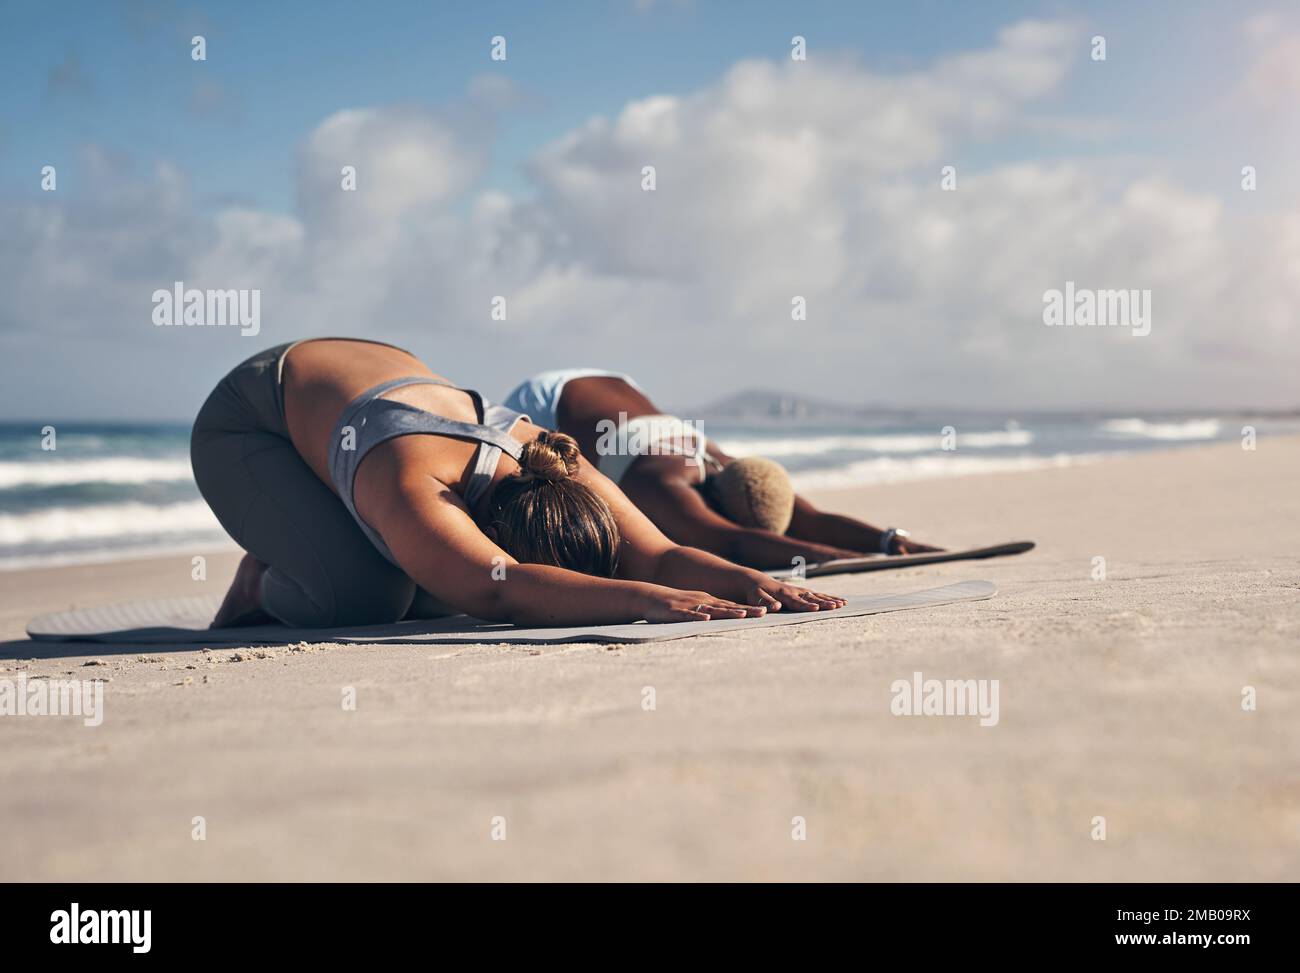 Yoga hält uns körperlich und geistig fit. Zwei junge Frauen, die am Strand Yoga üben. Stockfoto